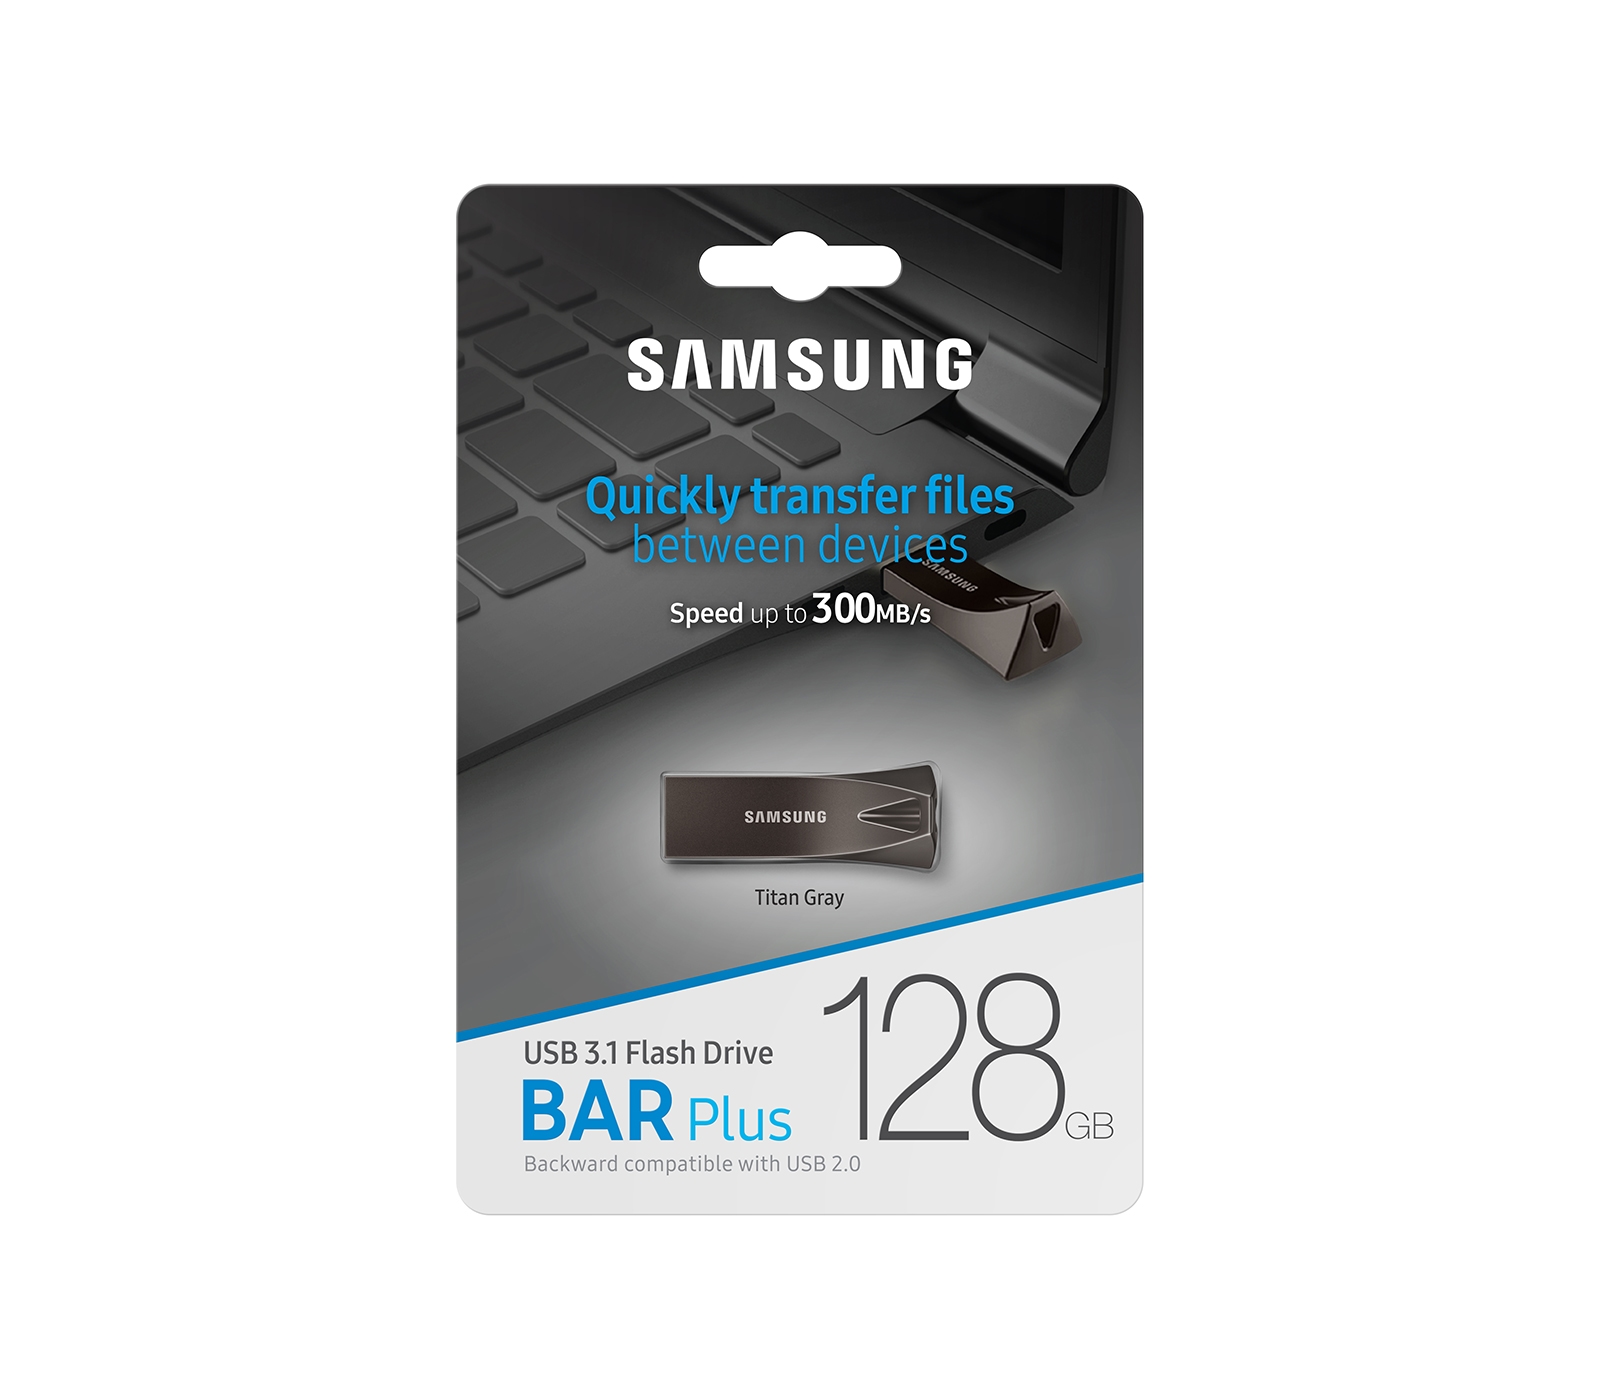  SAMSUNG BAR Plus 3.1 USB Flash Drive, 128GB, 400MB/s